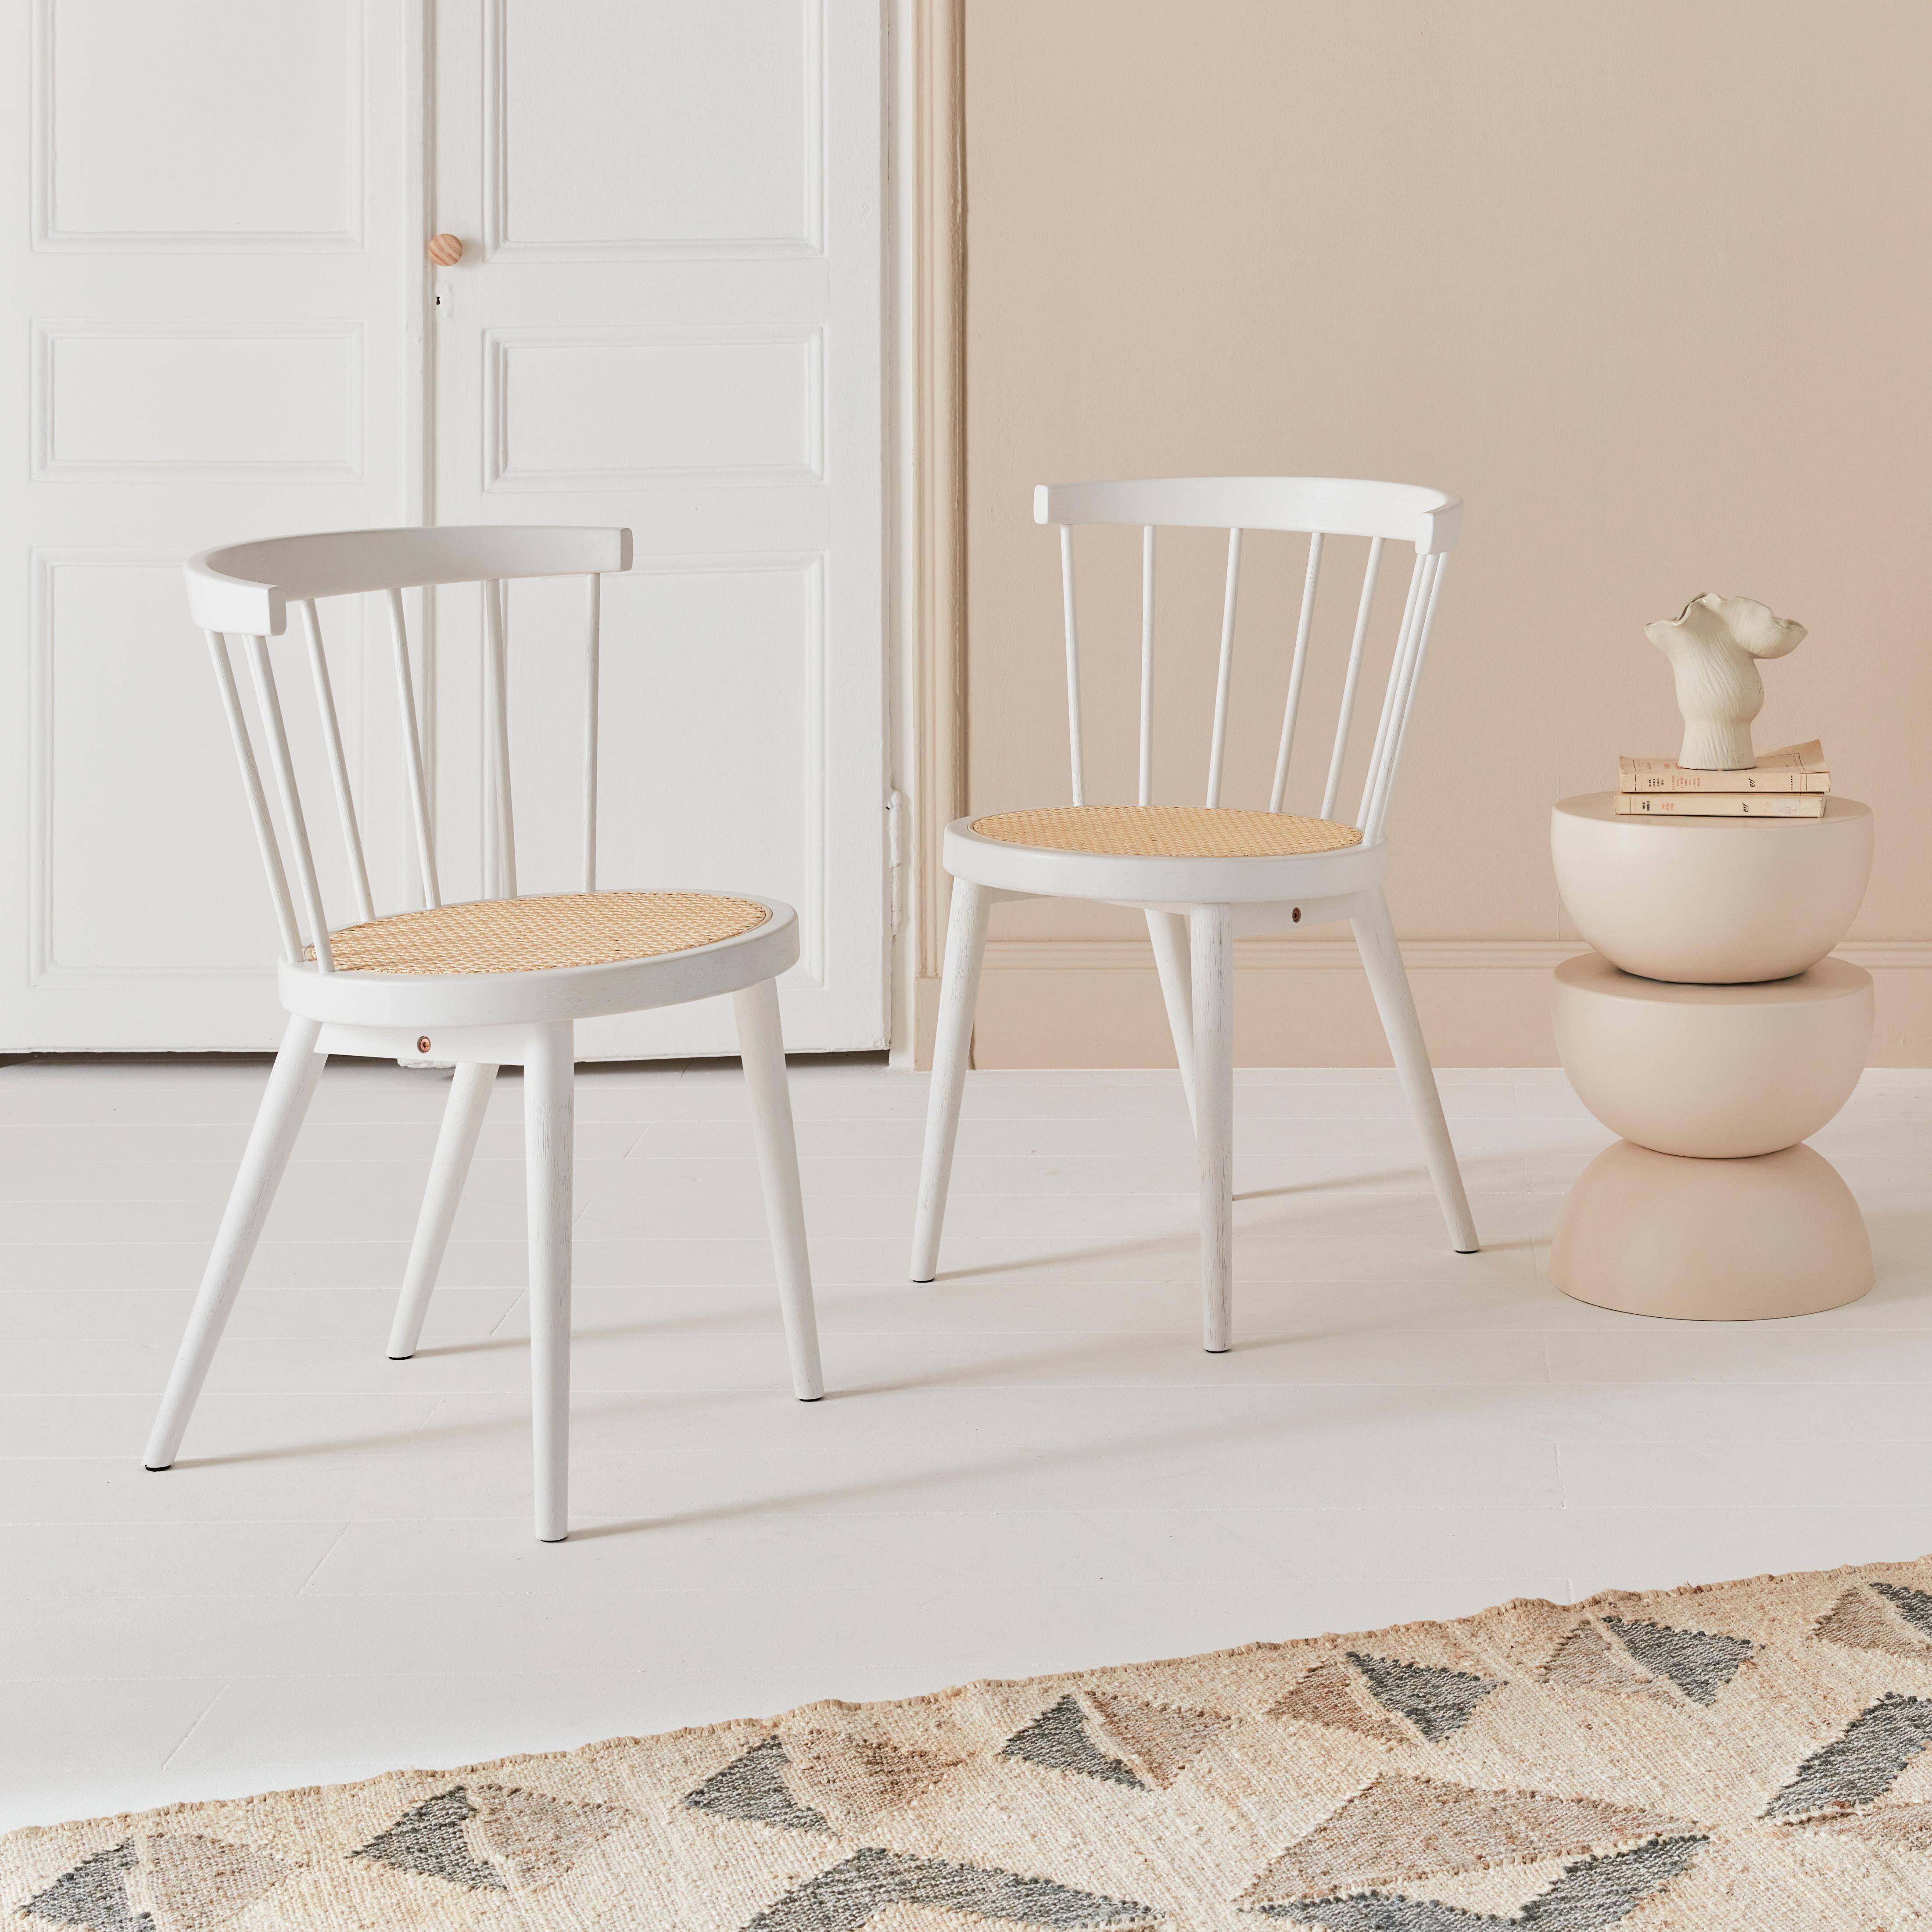 Set di 2 sedie in legno bianco e canna, Nora, L 54 x P 54 x H 76,5 cm. Photo2